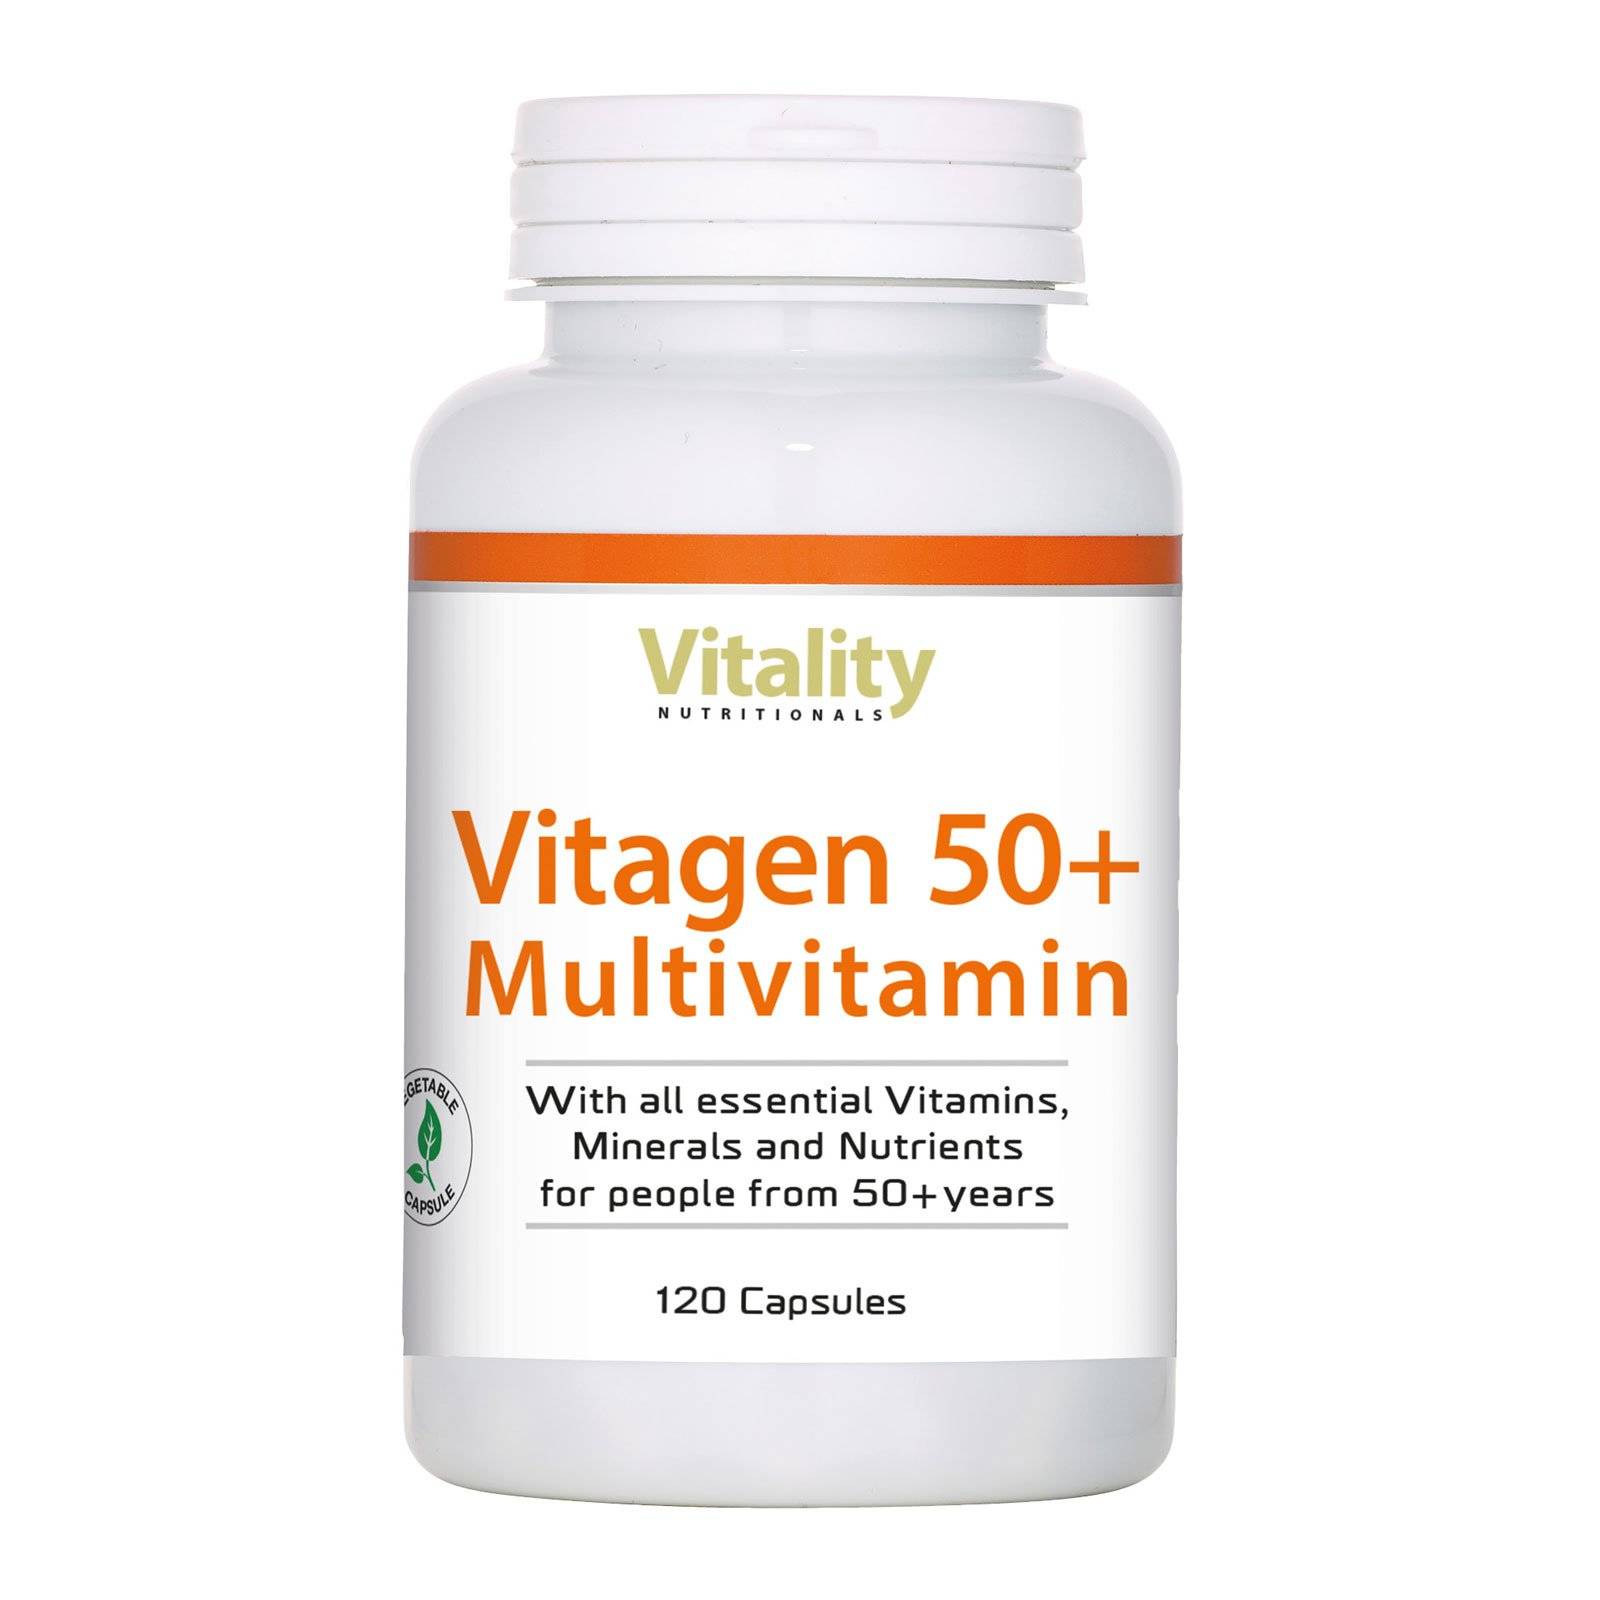 Vitagen 50+ Multivitamin